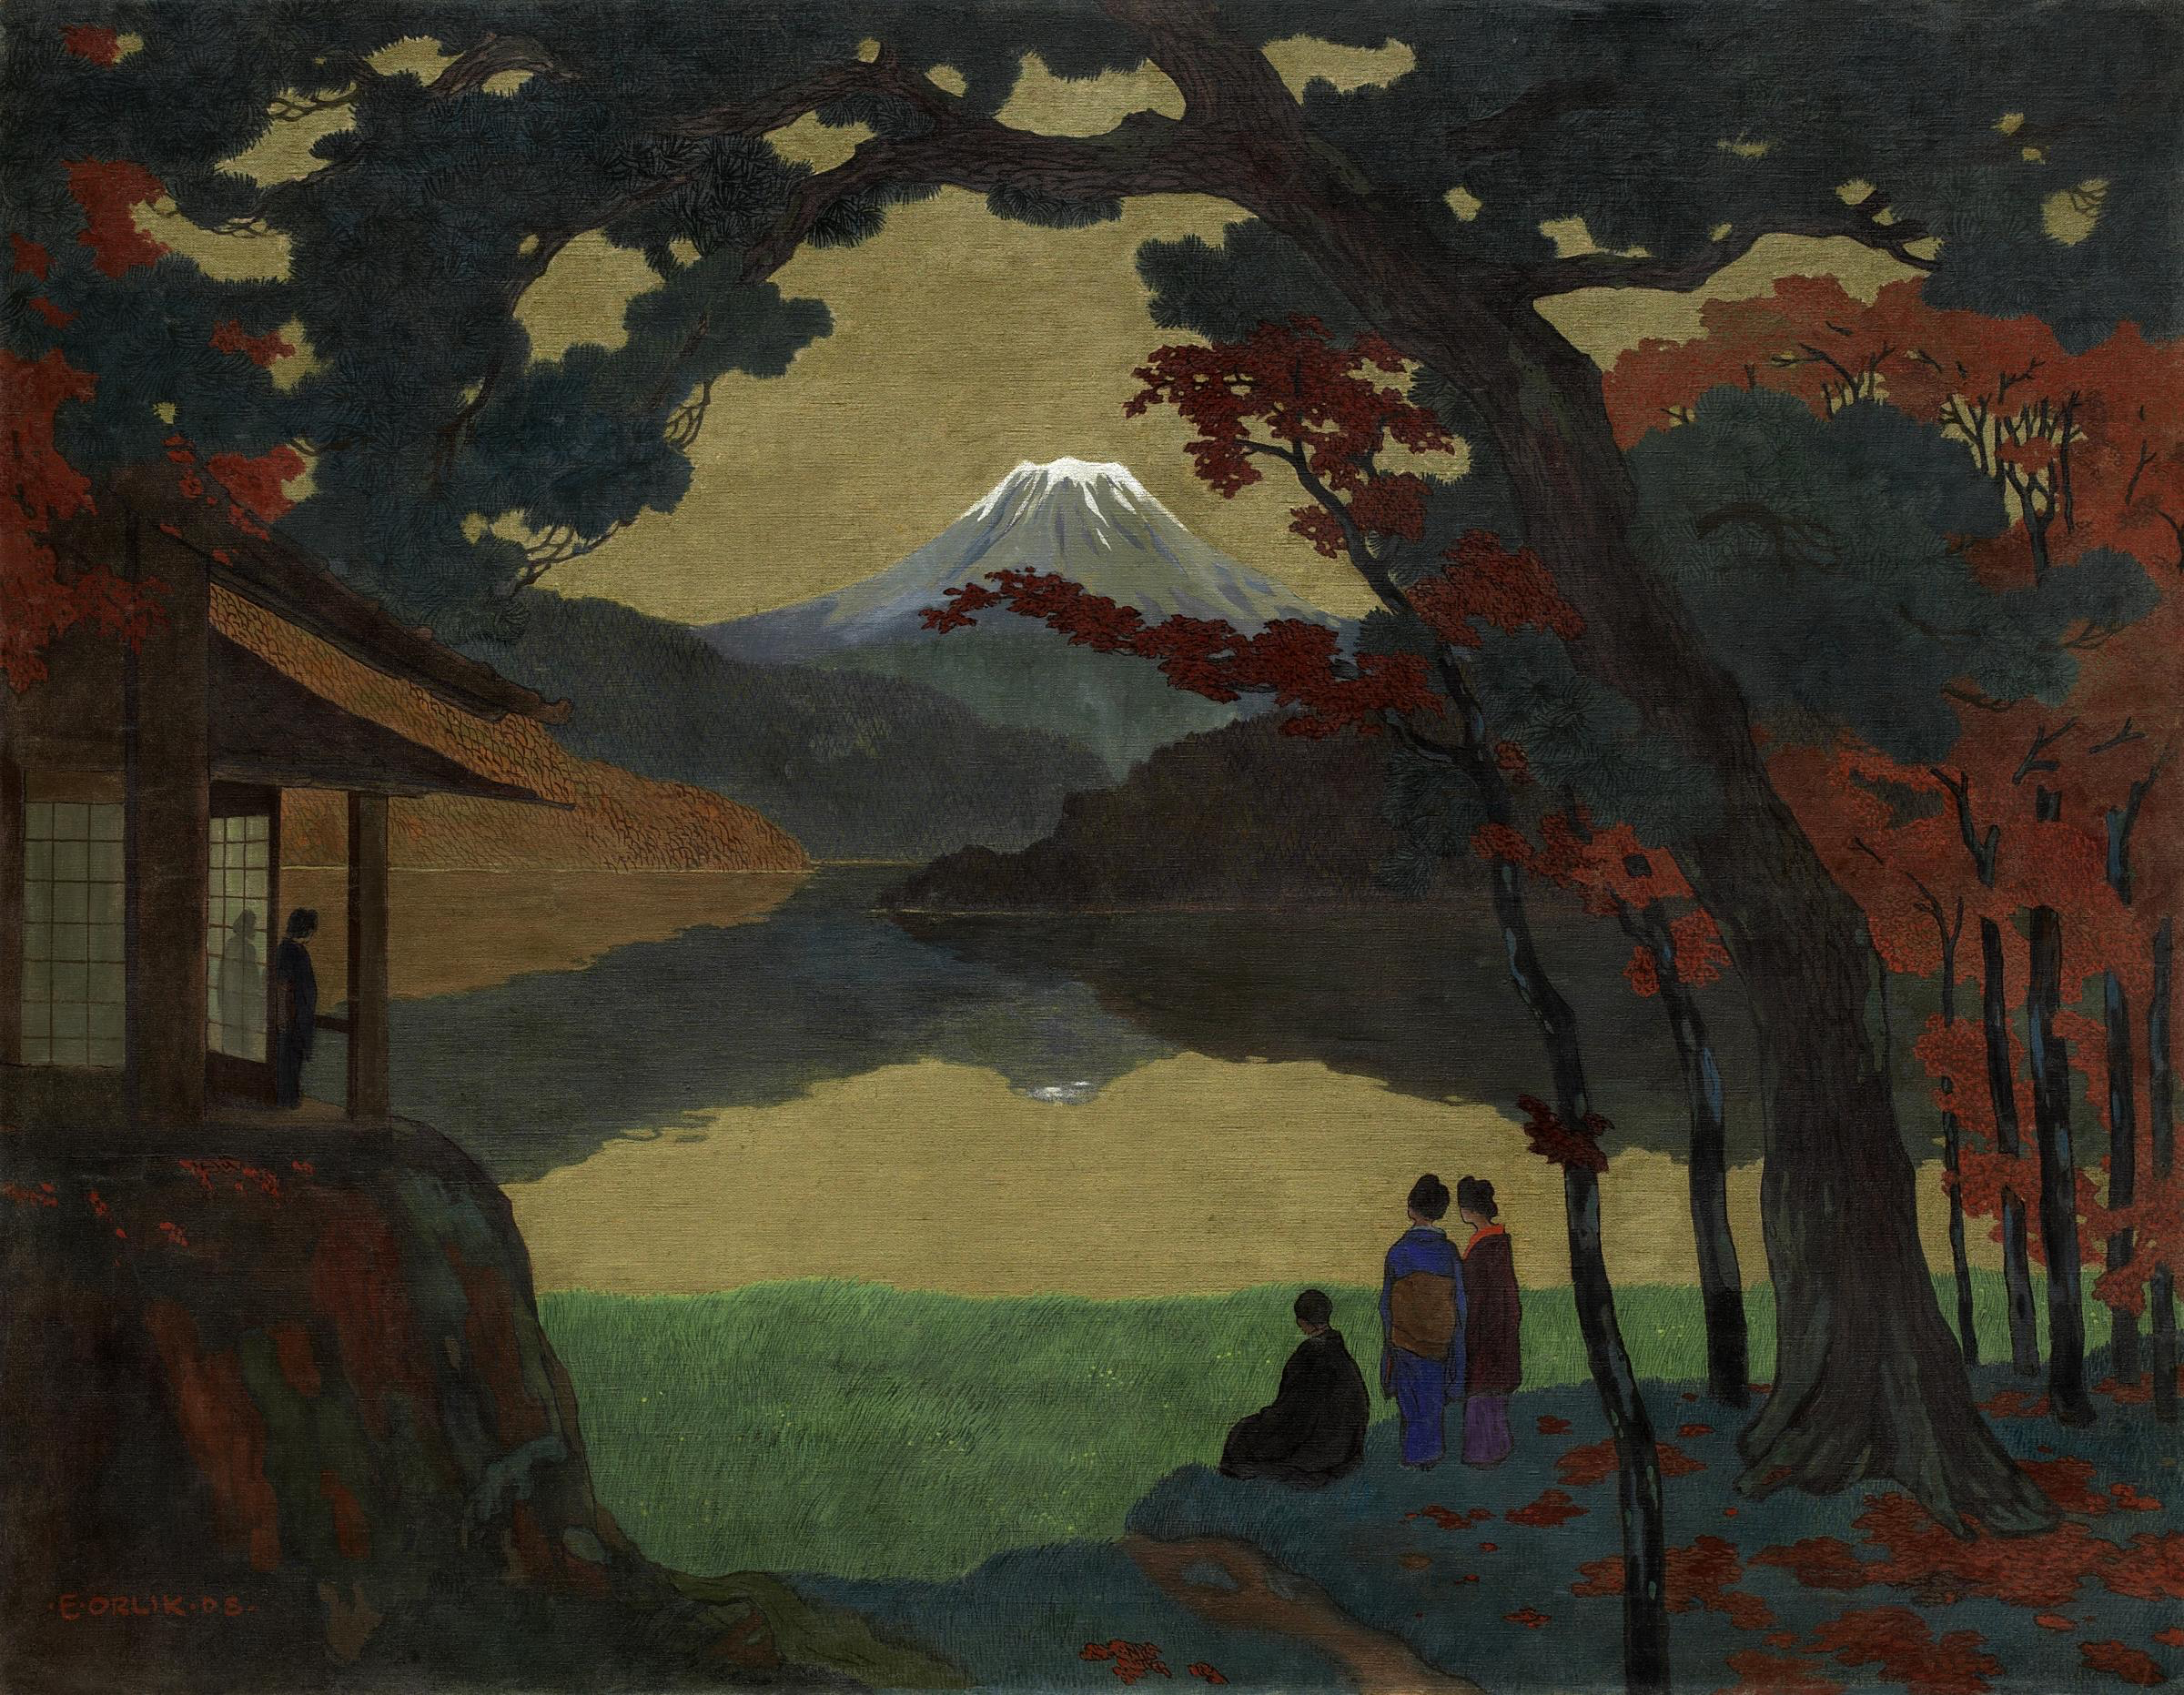 Paysage avec le mont Fuji au loin by Emil Orlik - 1908 - 120,5 x 154,5 cm collection privée